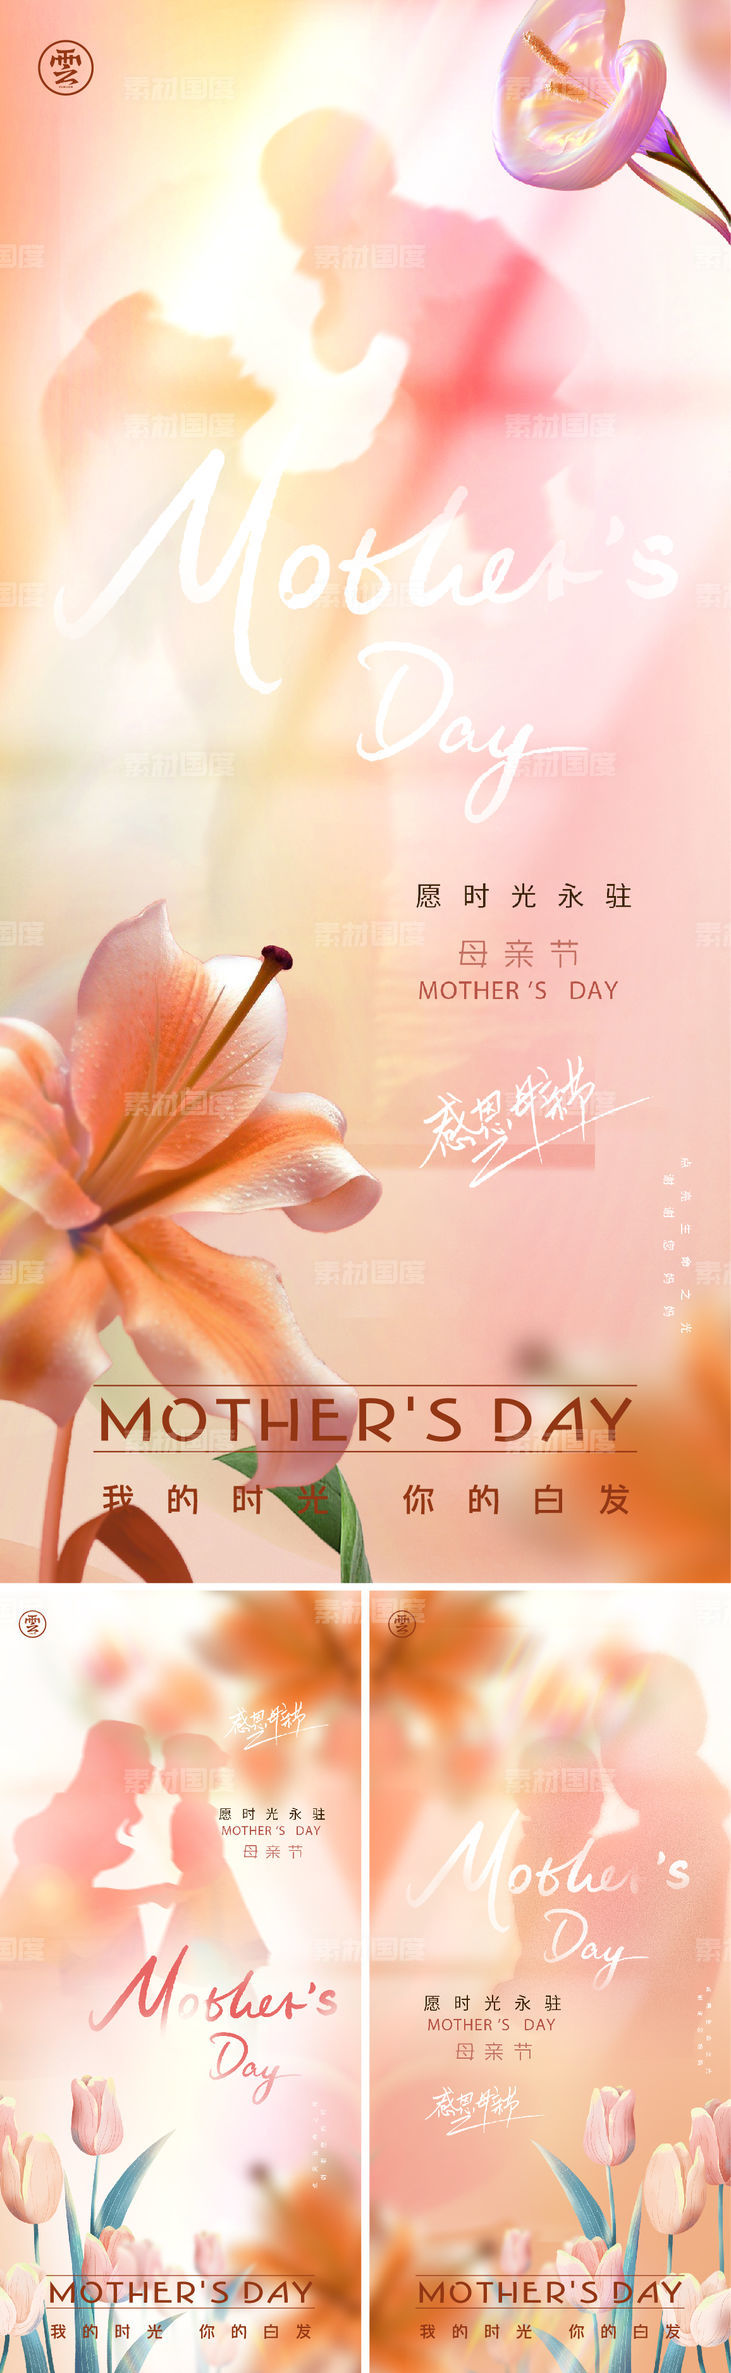 母亲节 母子 母女 剪影 弥散 光 花朵 温馨